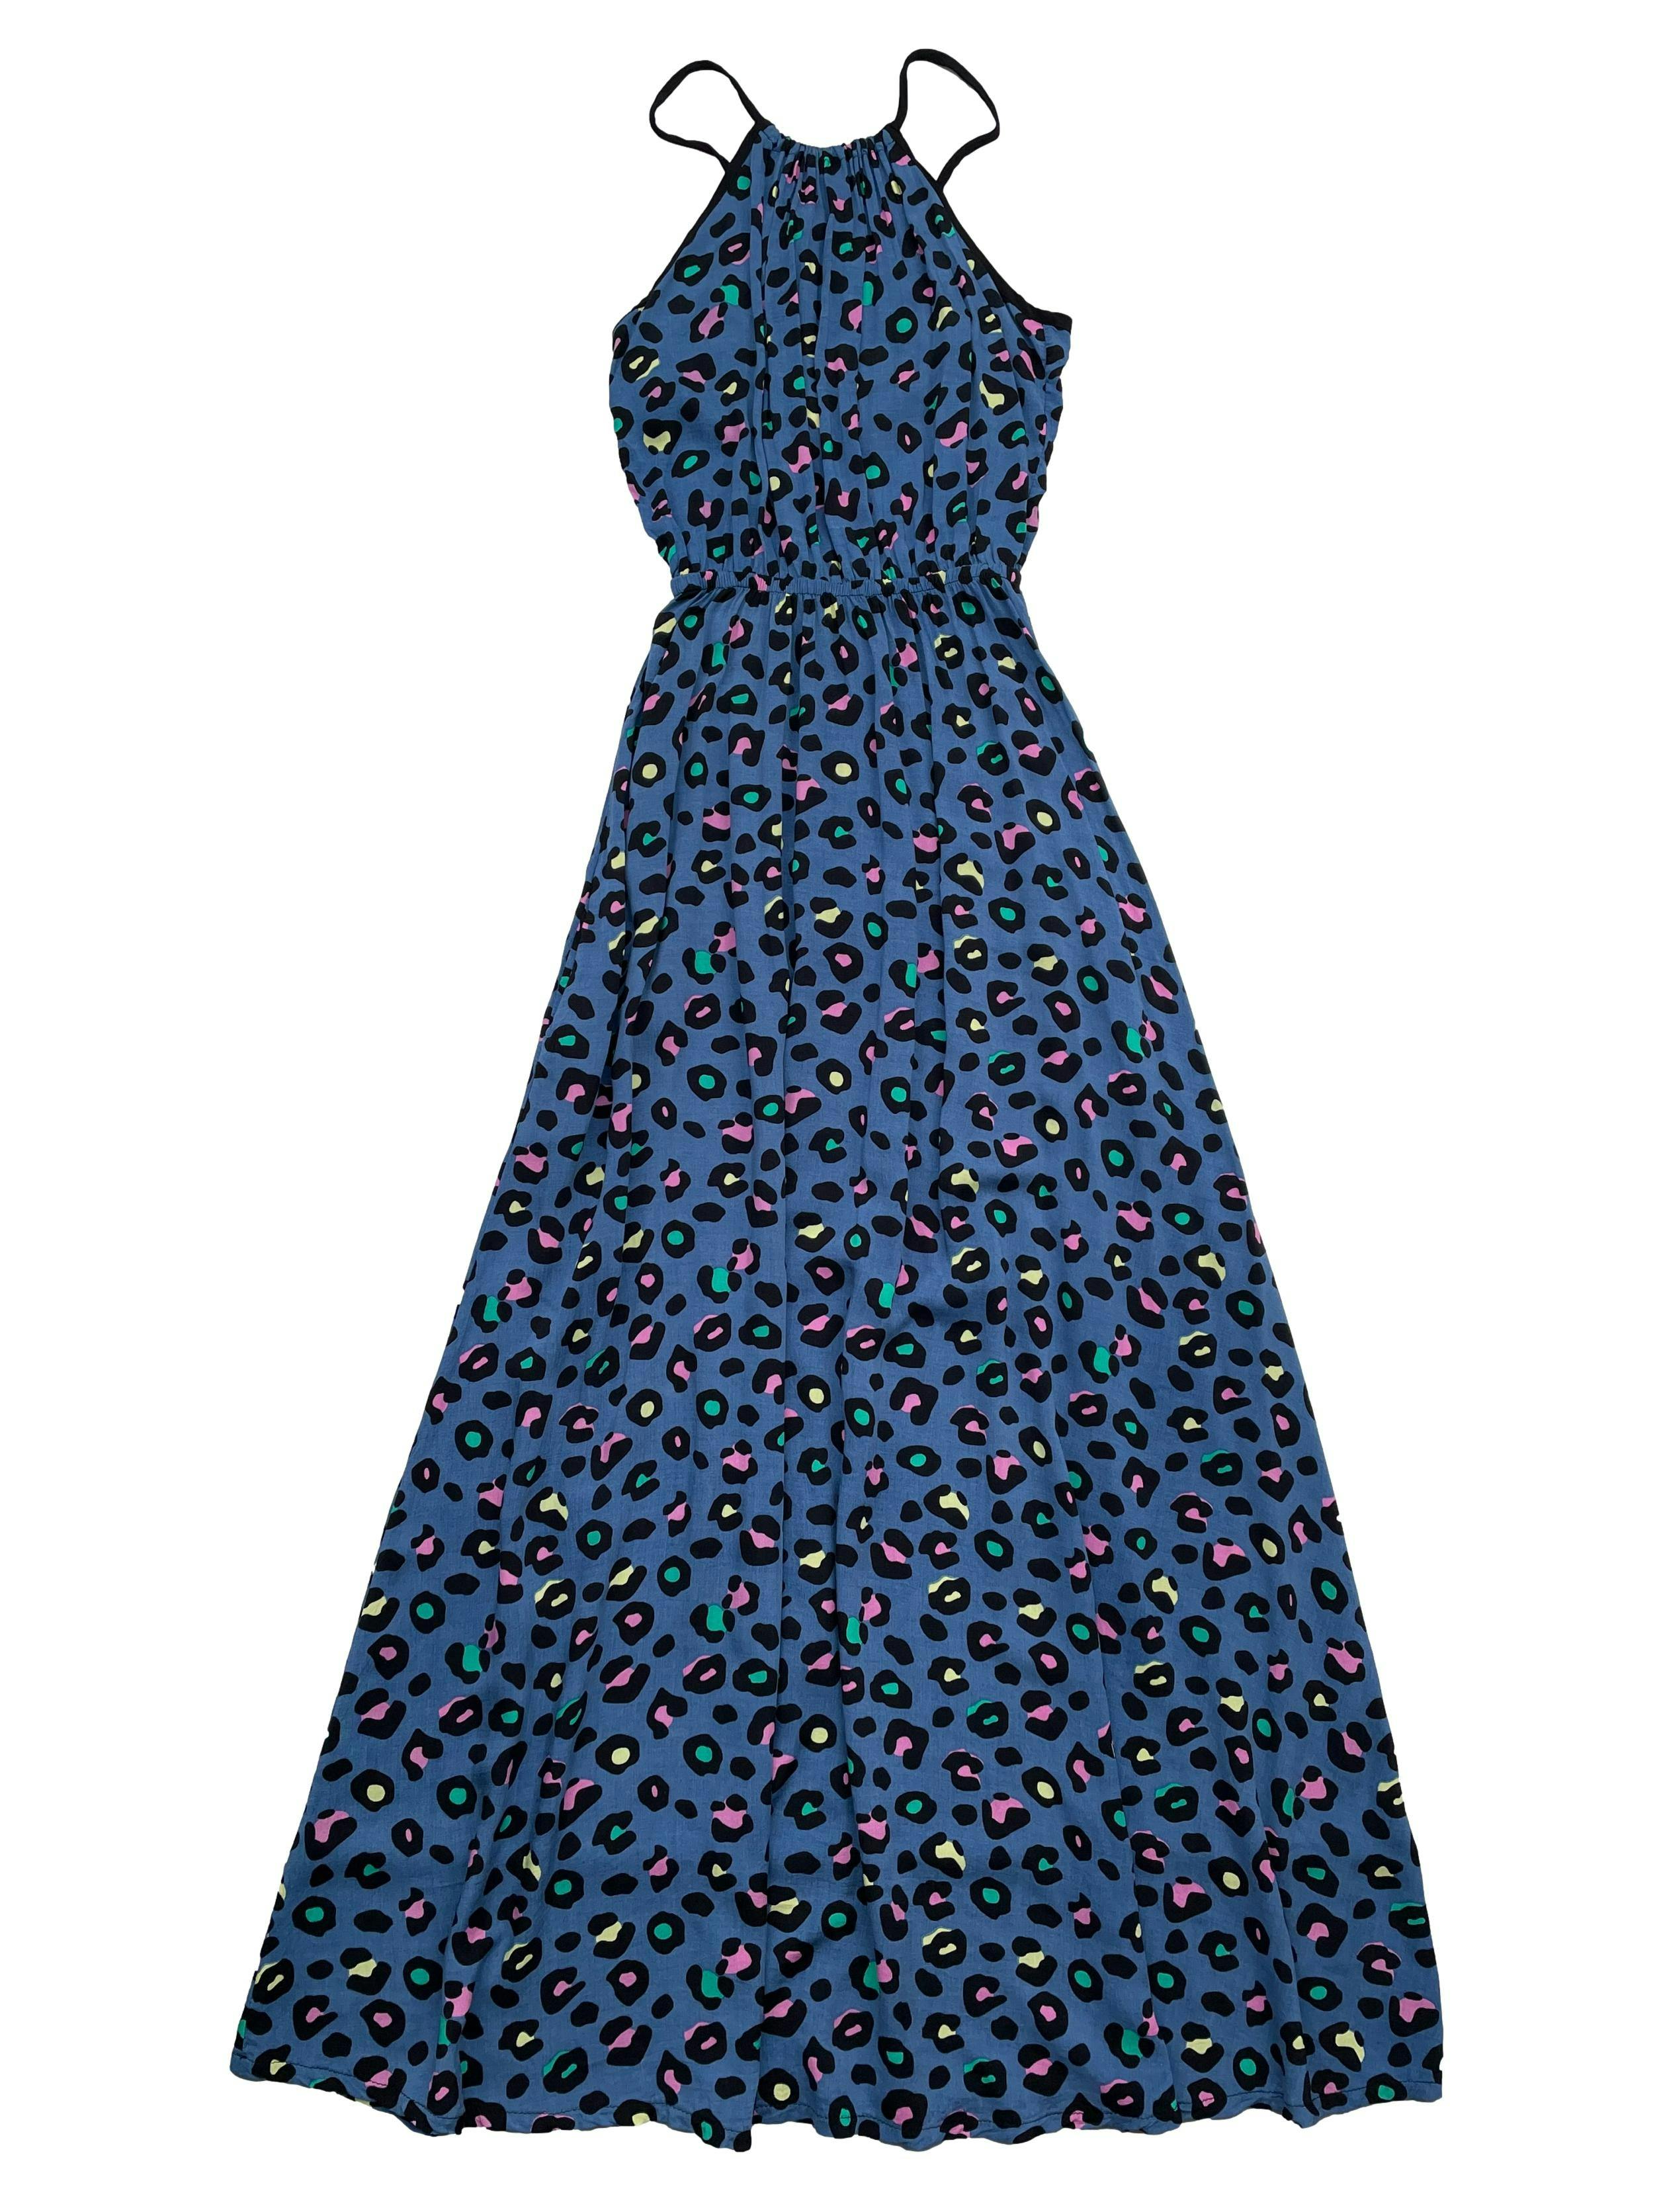 Vestido largo animal print azul con colores, tela tipo chalis, se amarra en la espalda, cintura elástica y bolsillos en falda. Largo 135cm. Nuevo con etiqueta